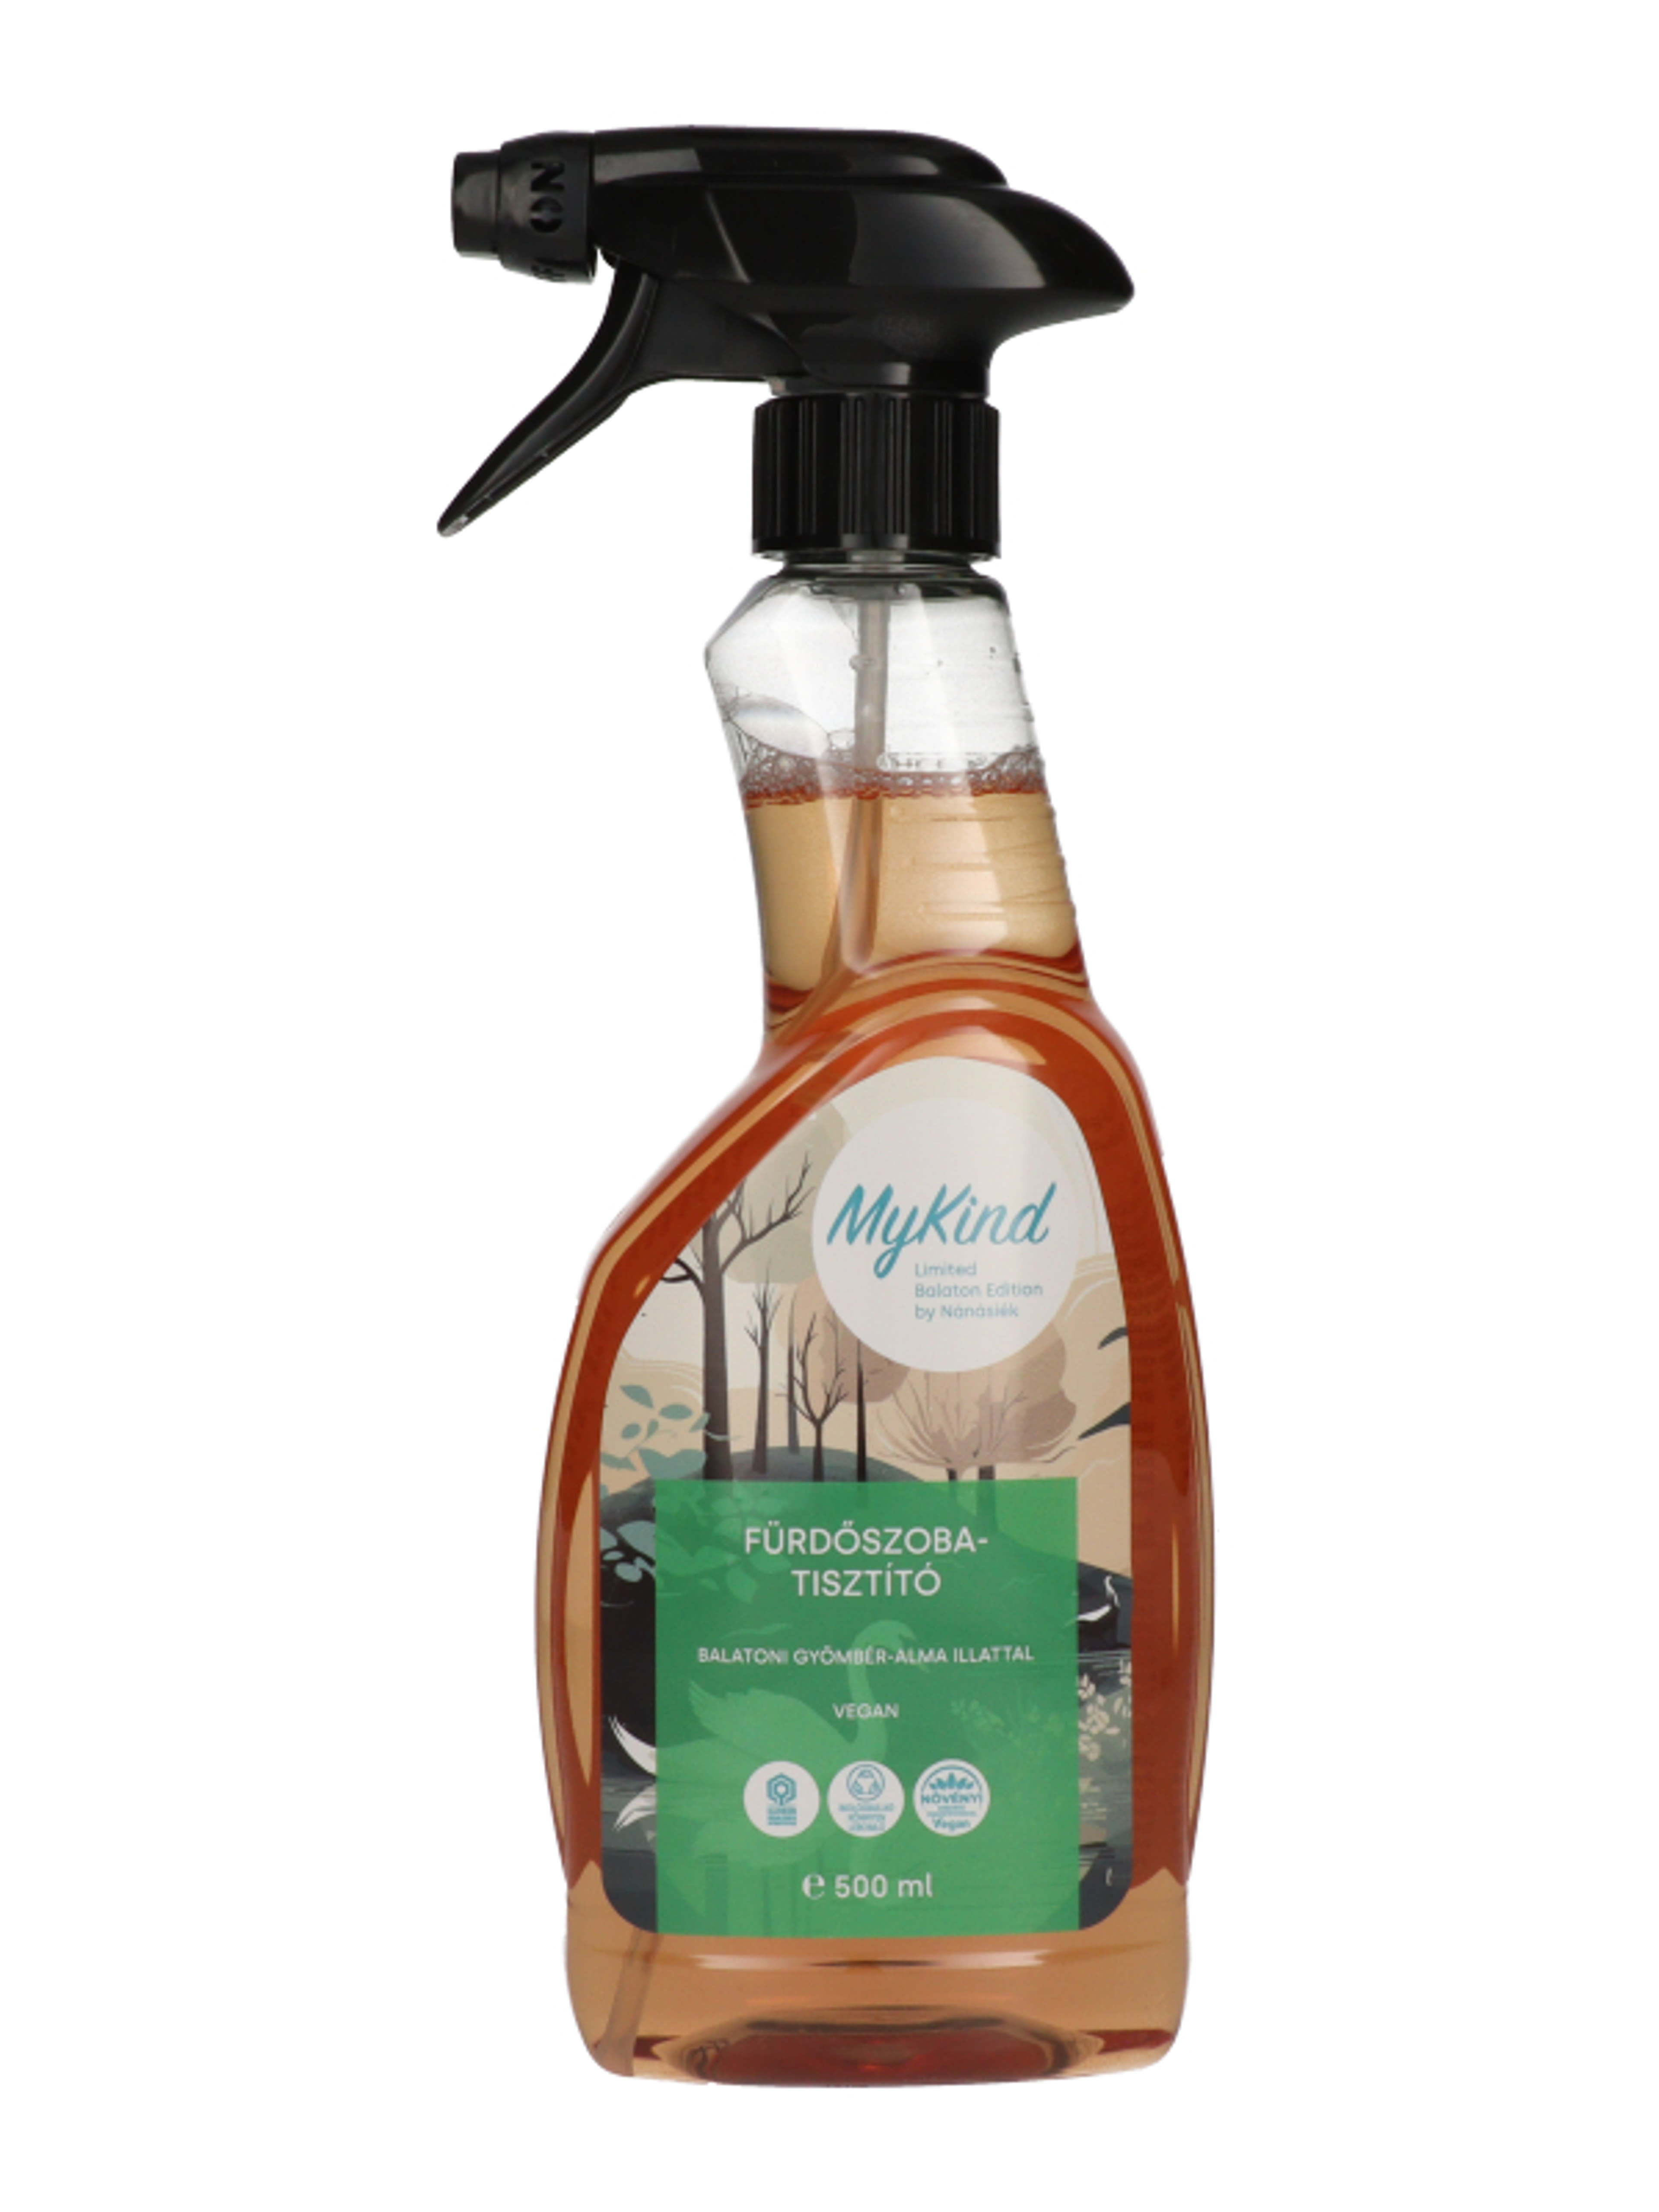 MyKind fürdőszobai tisztítószer balatoni gyömbér -alma illatban - 500 ml-1